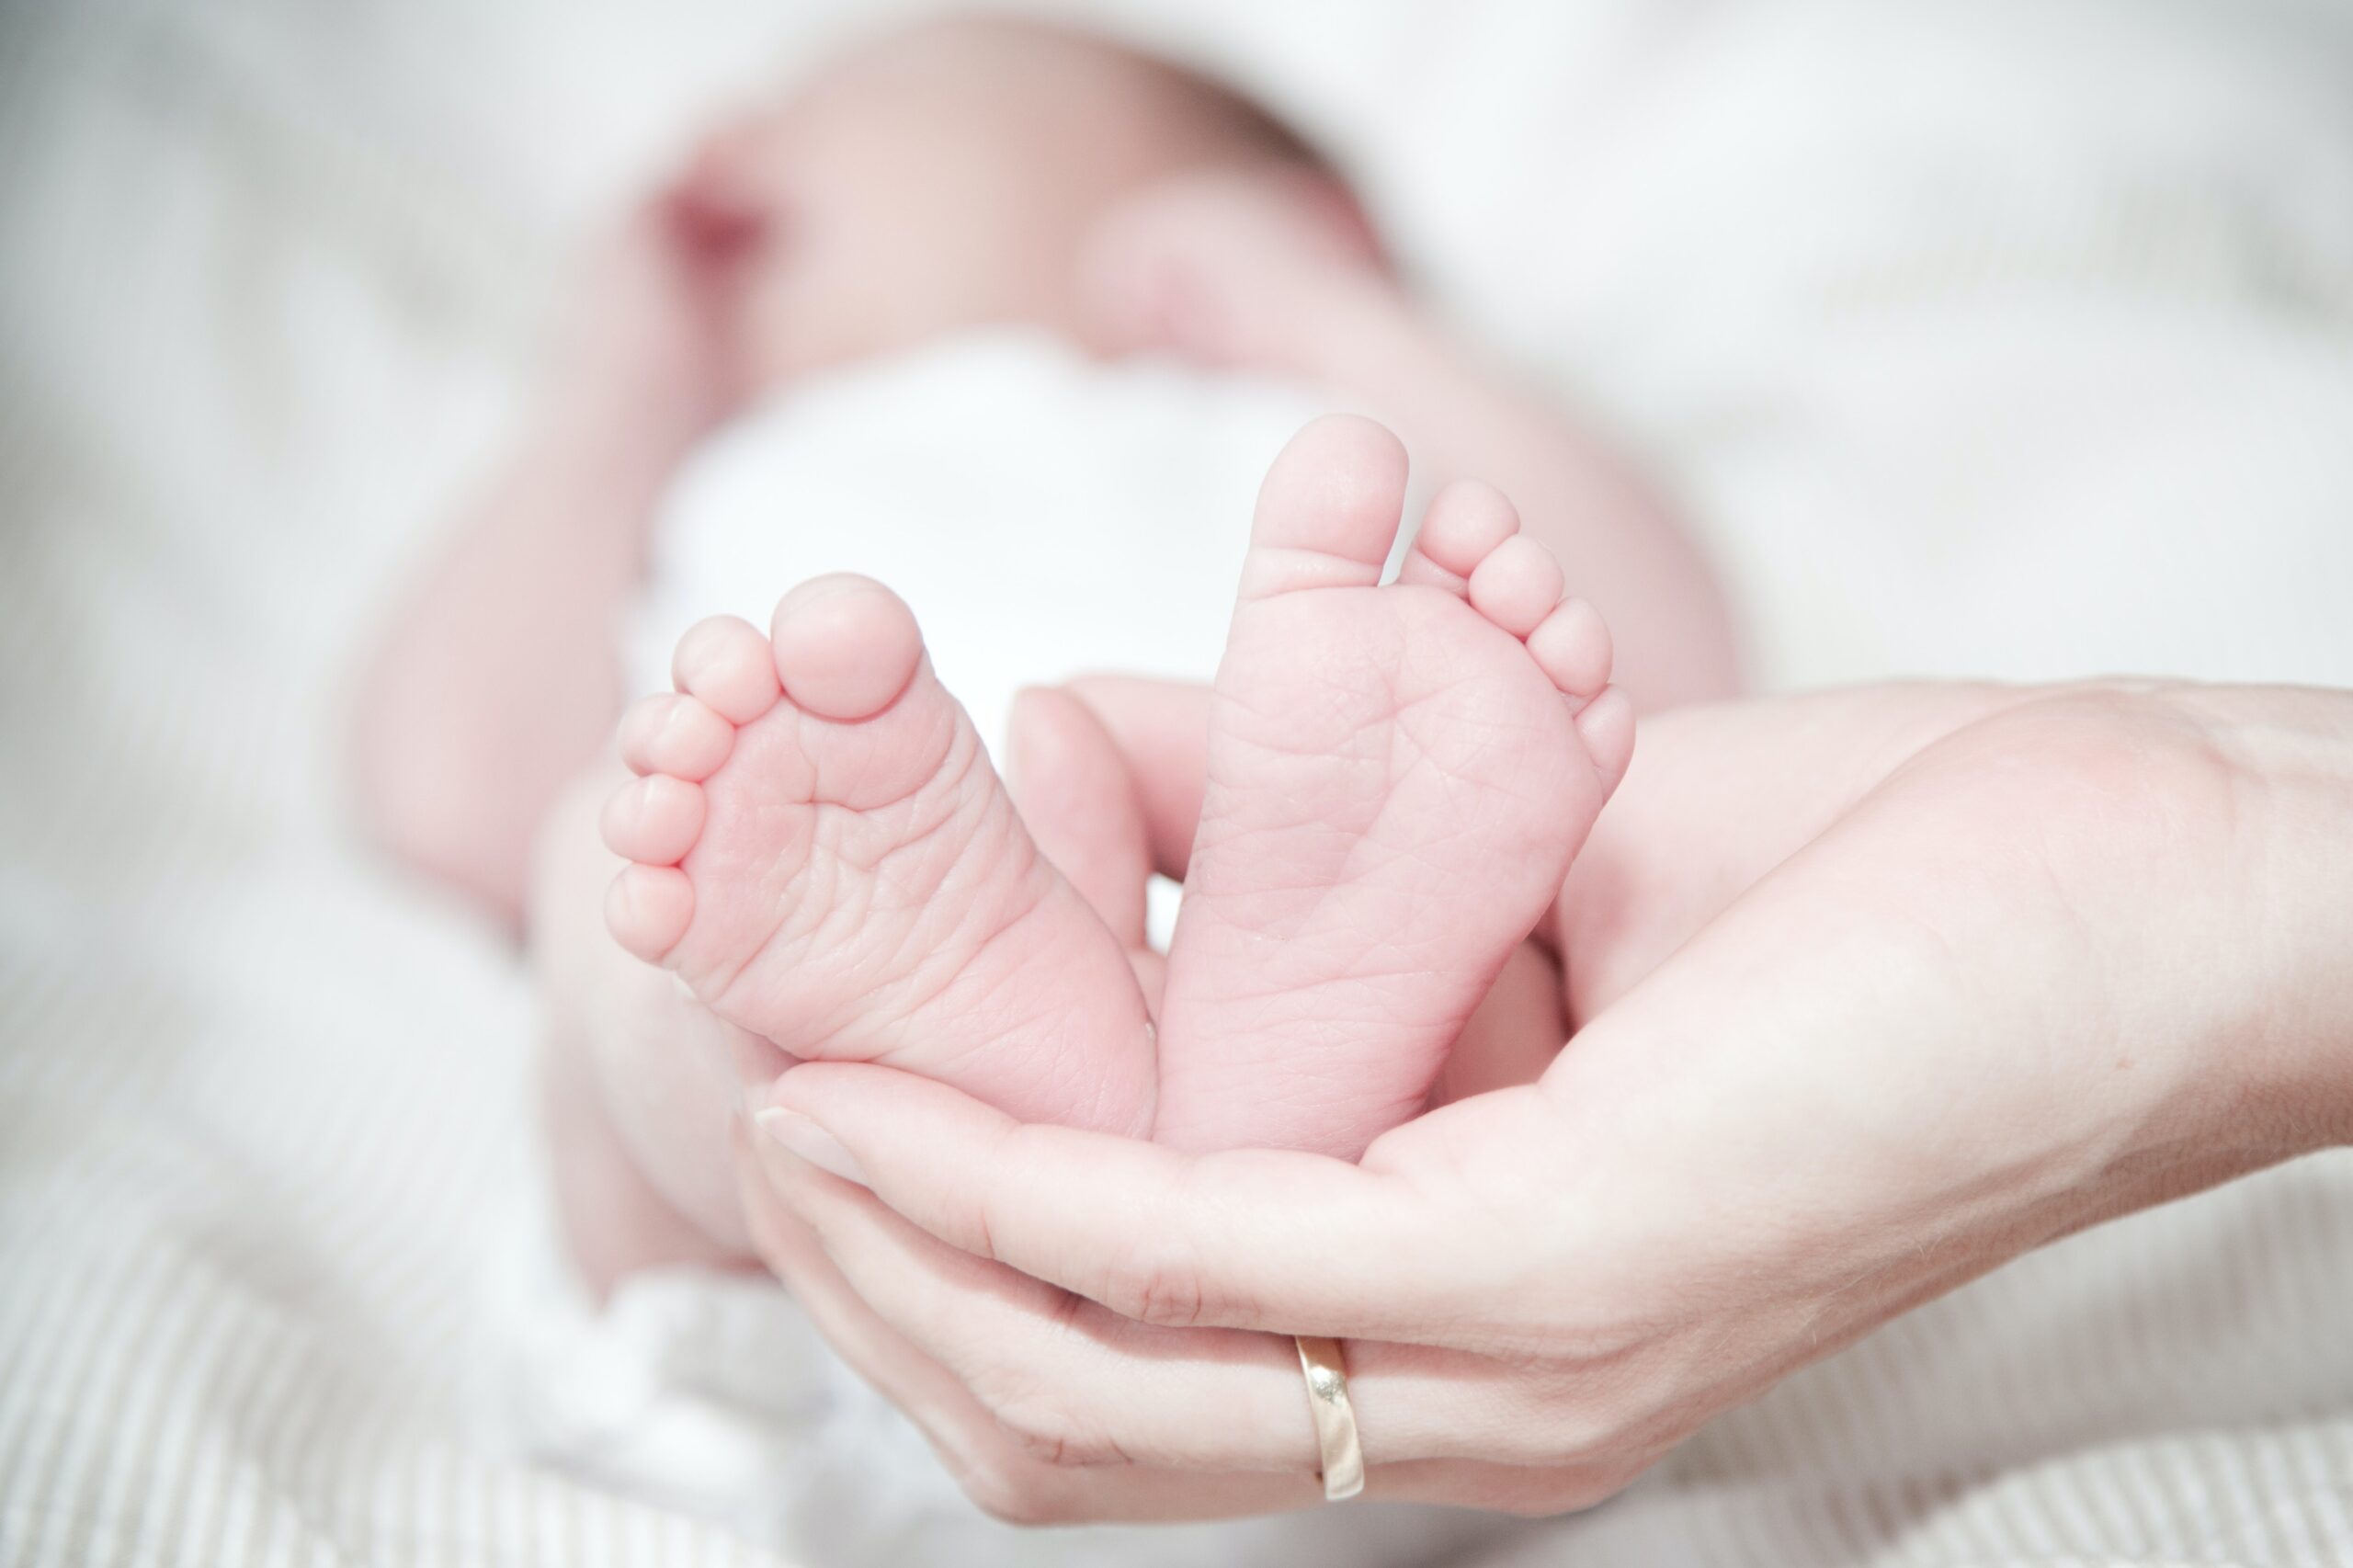 Baby's feet in mother's hands